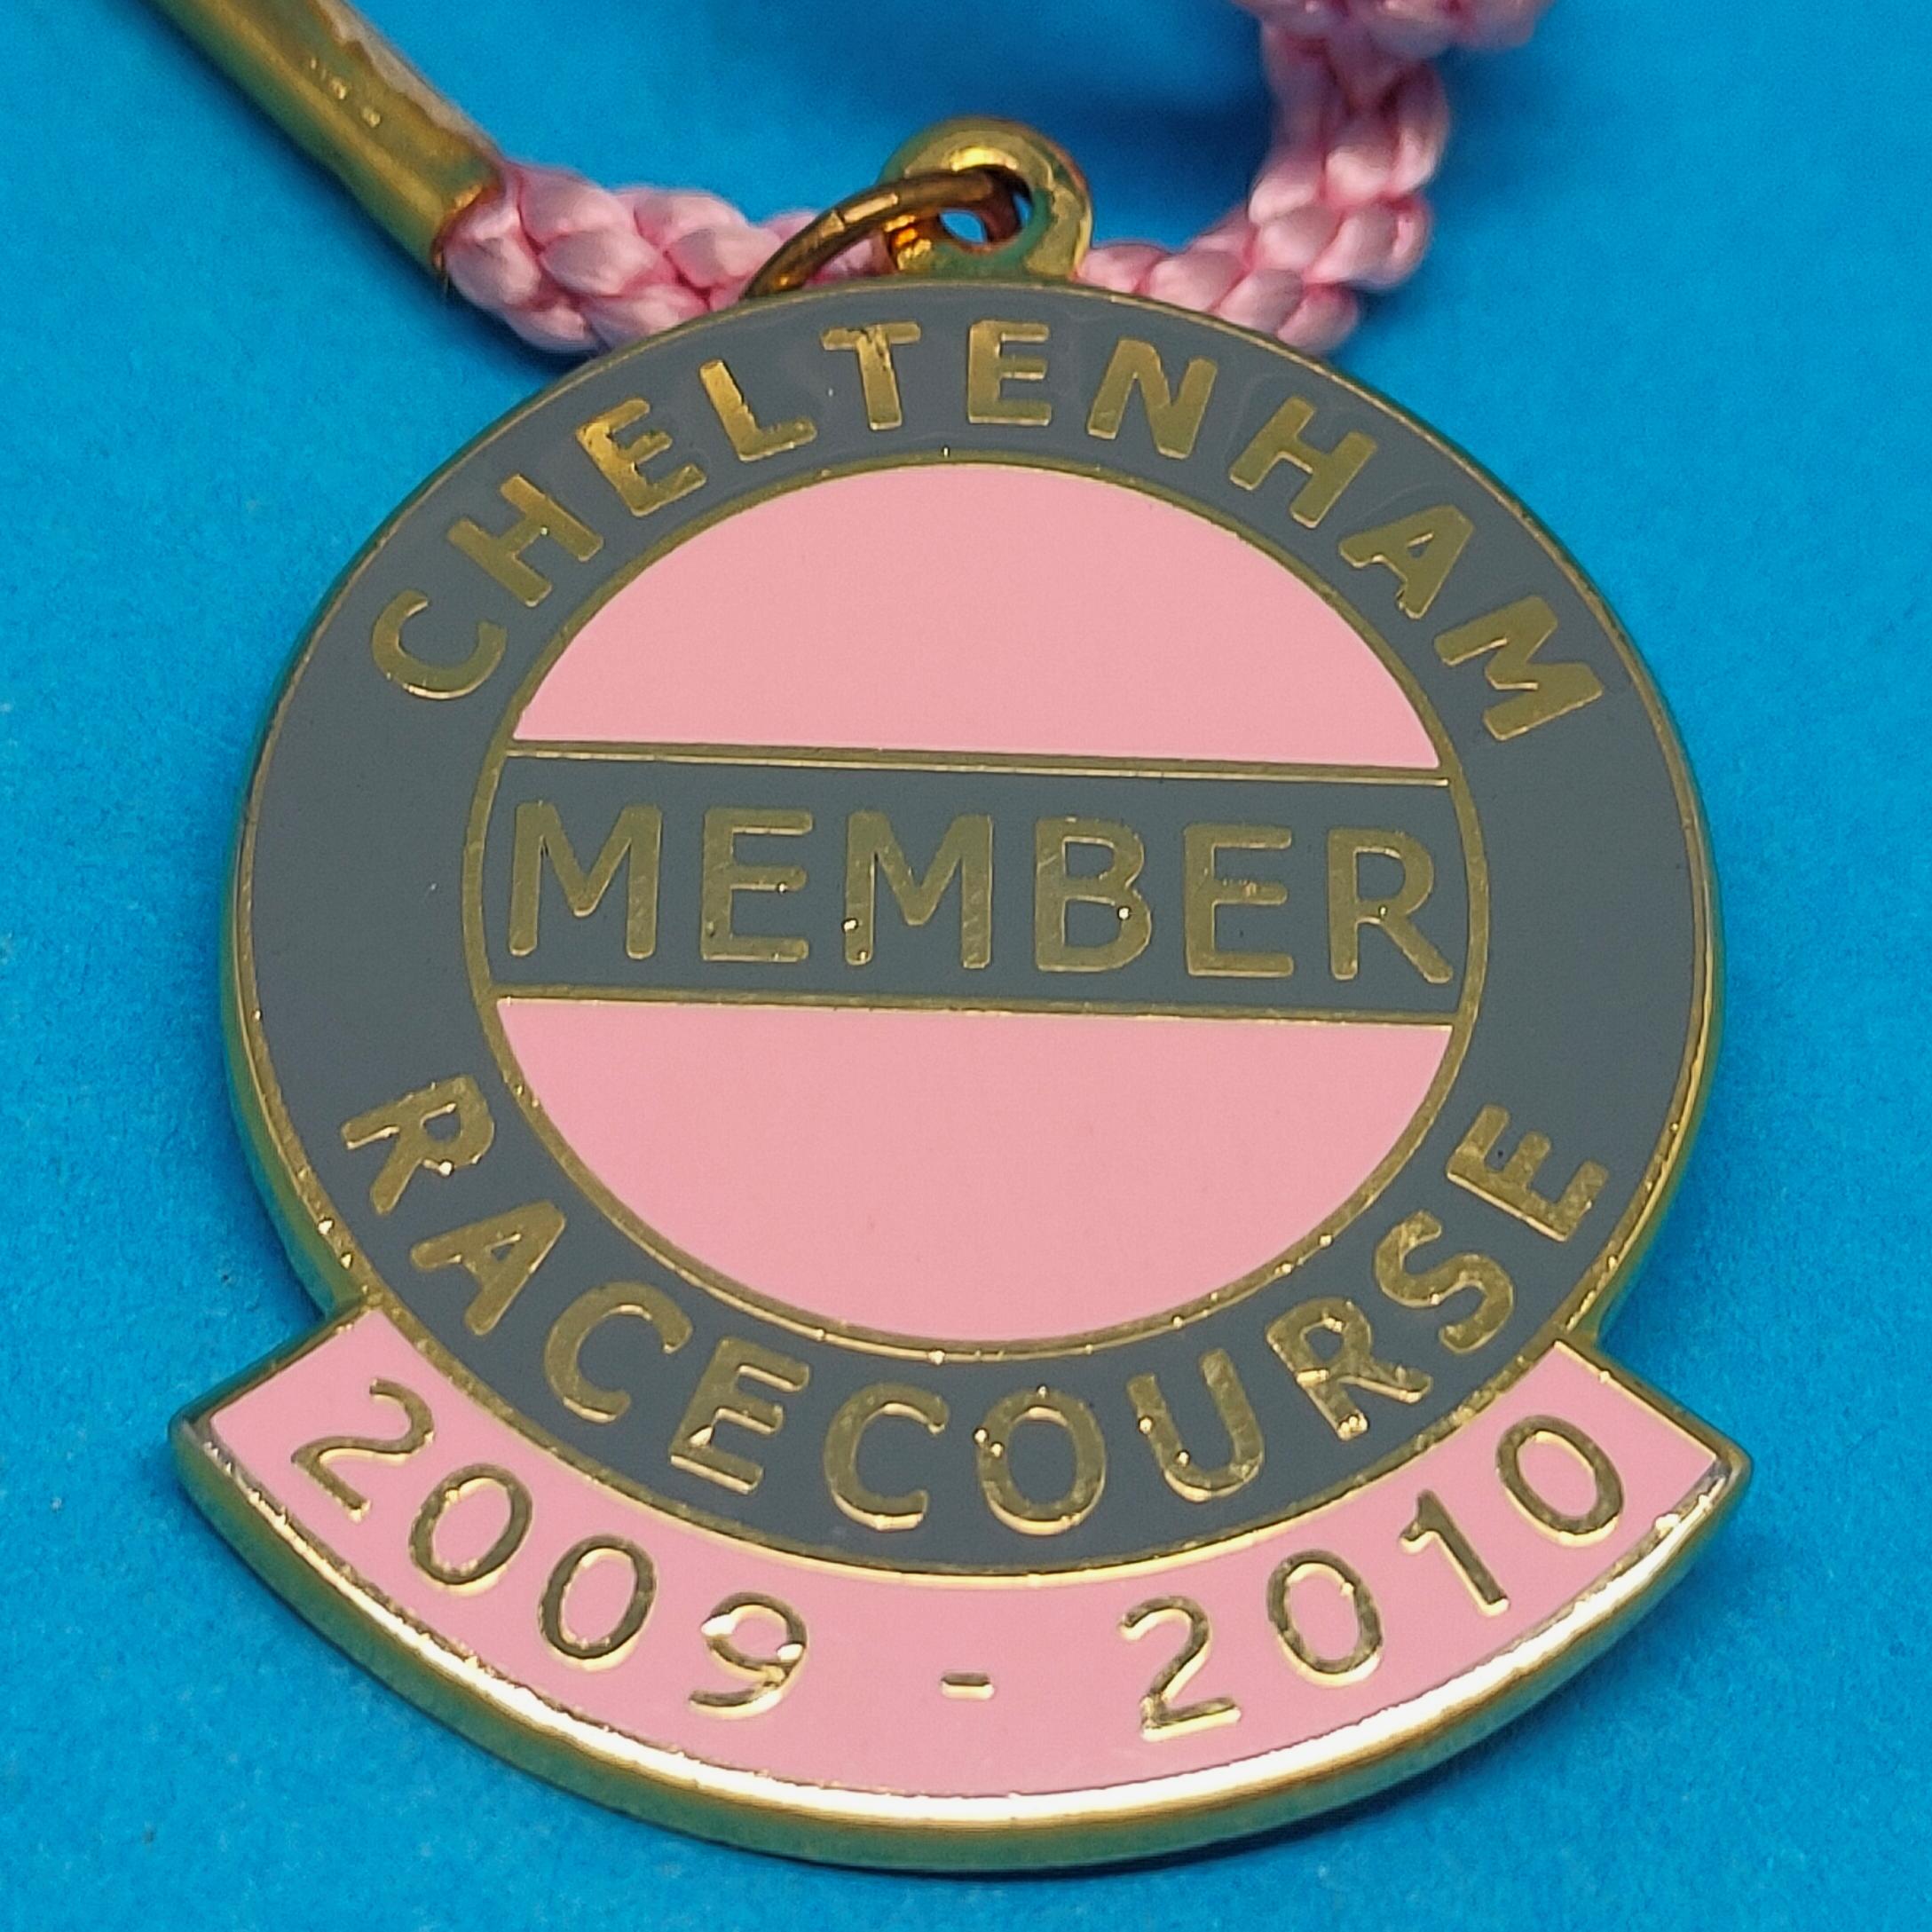 Cheltenham 2009 / 2010